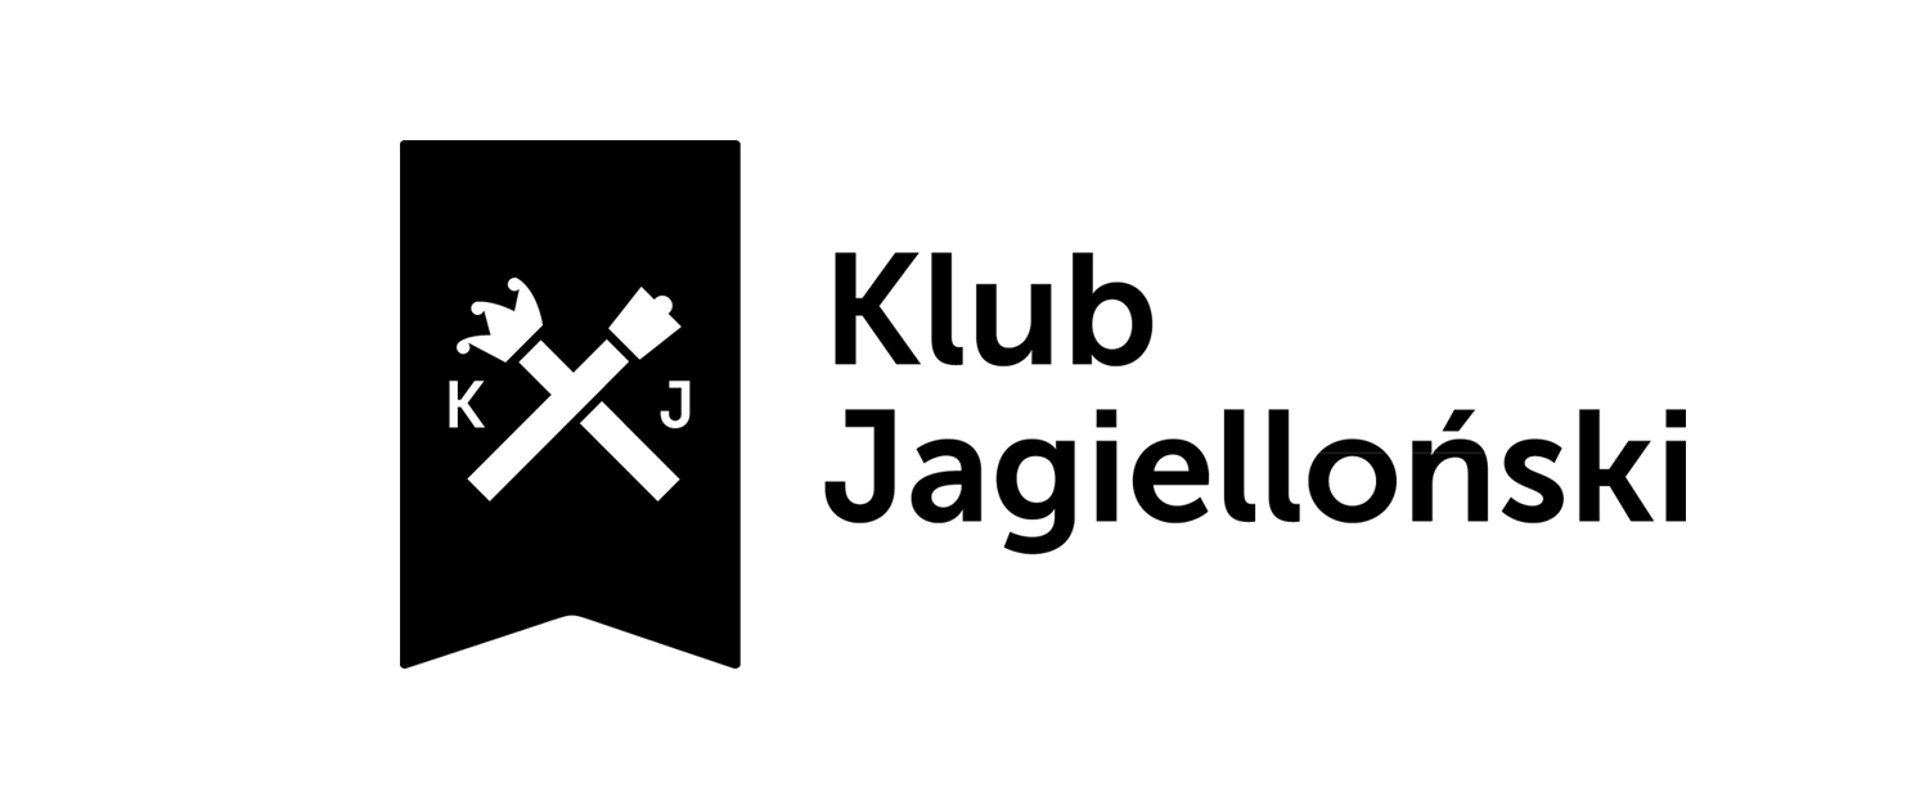 Logo Klubu Jagiellońskiego. Białe tło, czarne symbole i liternictwo lub odwrotnie: dwa skrzyżowane berła, litery KJ, napis Klub Jagielloński.